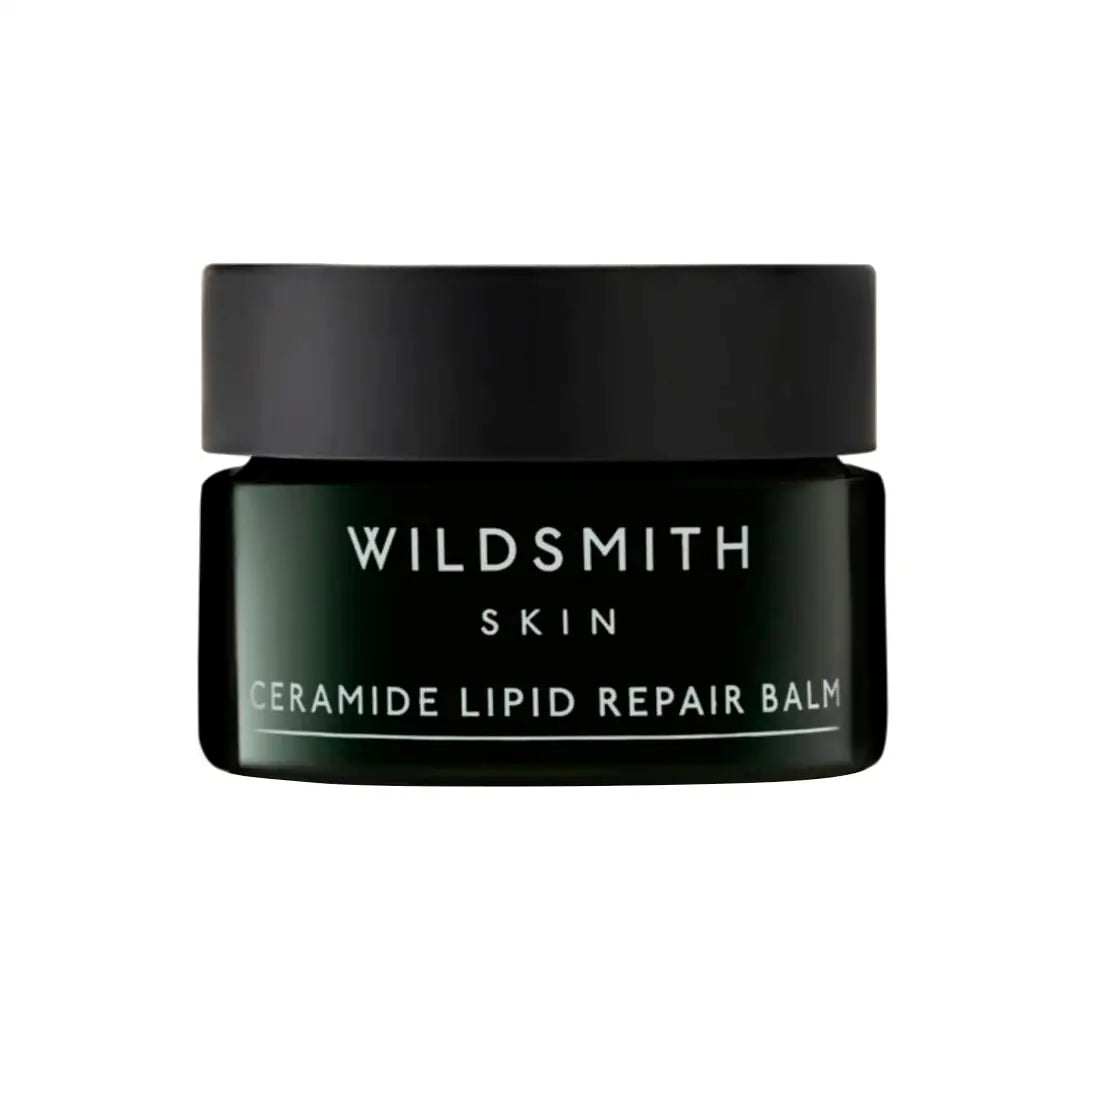 Wildsmith Skin Ceramide Lipid Repair Balm 12.75gr